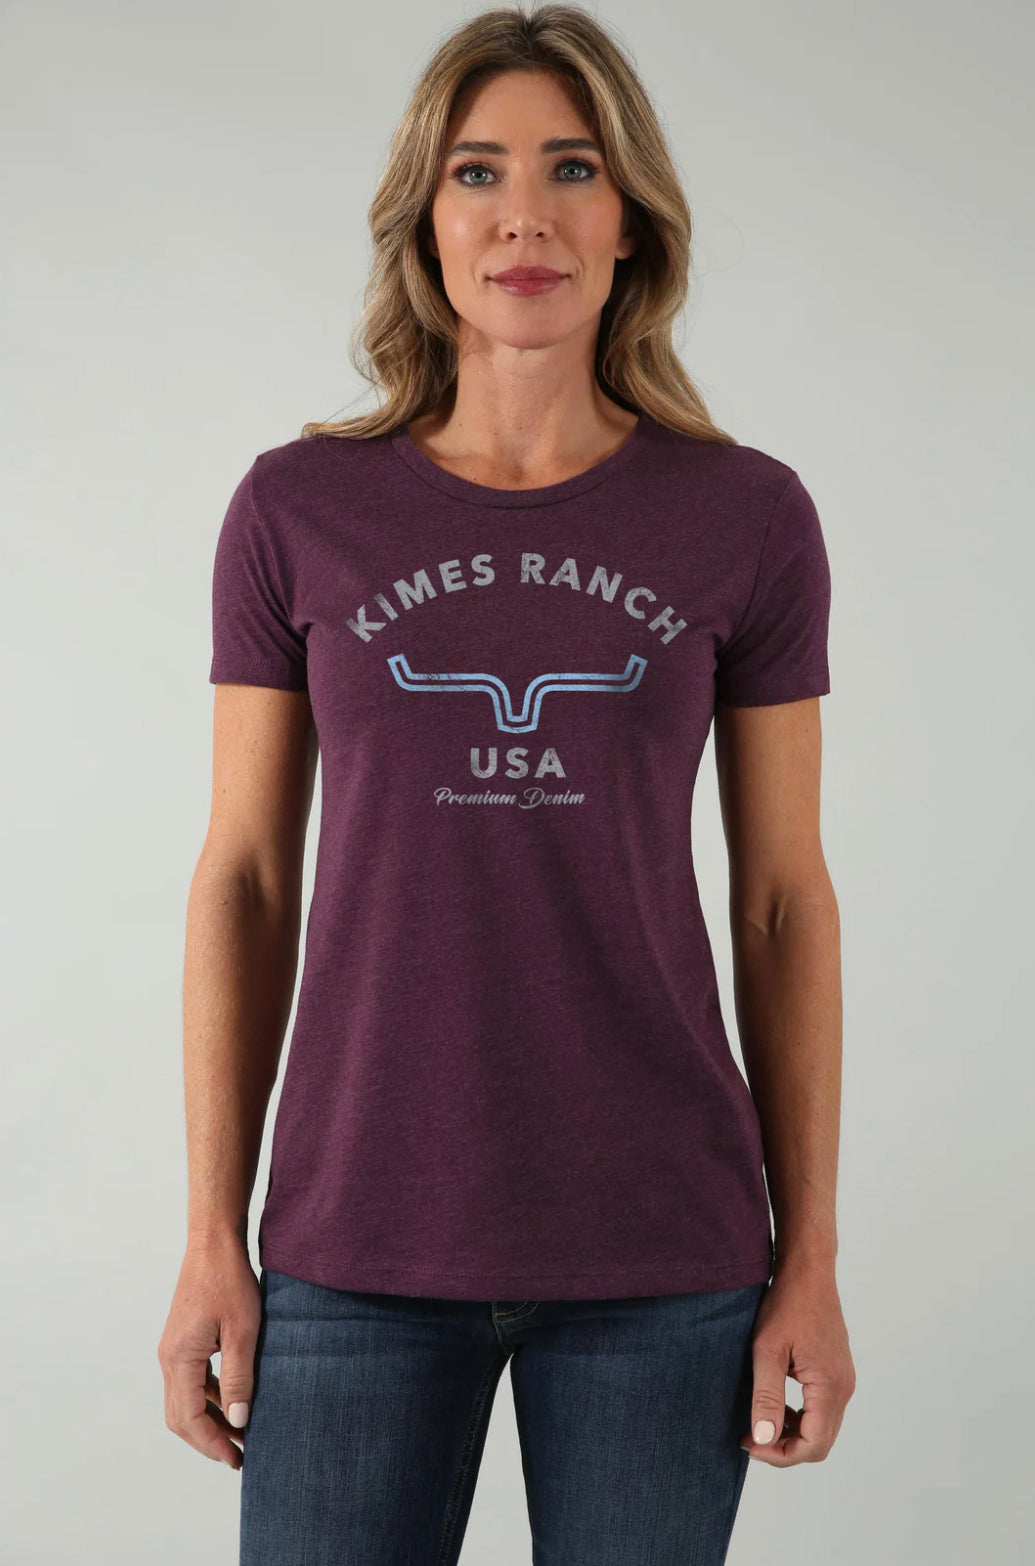 Kimes Ranch Arch Tee Shirt